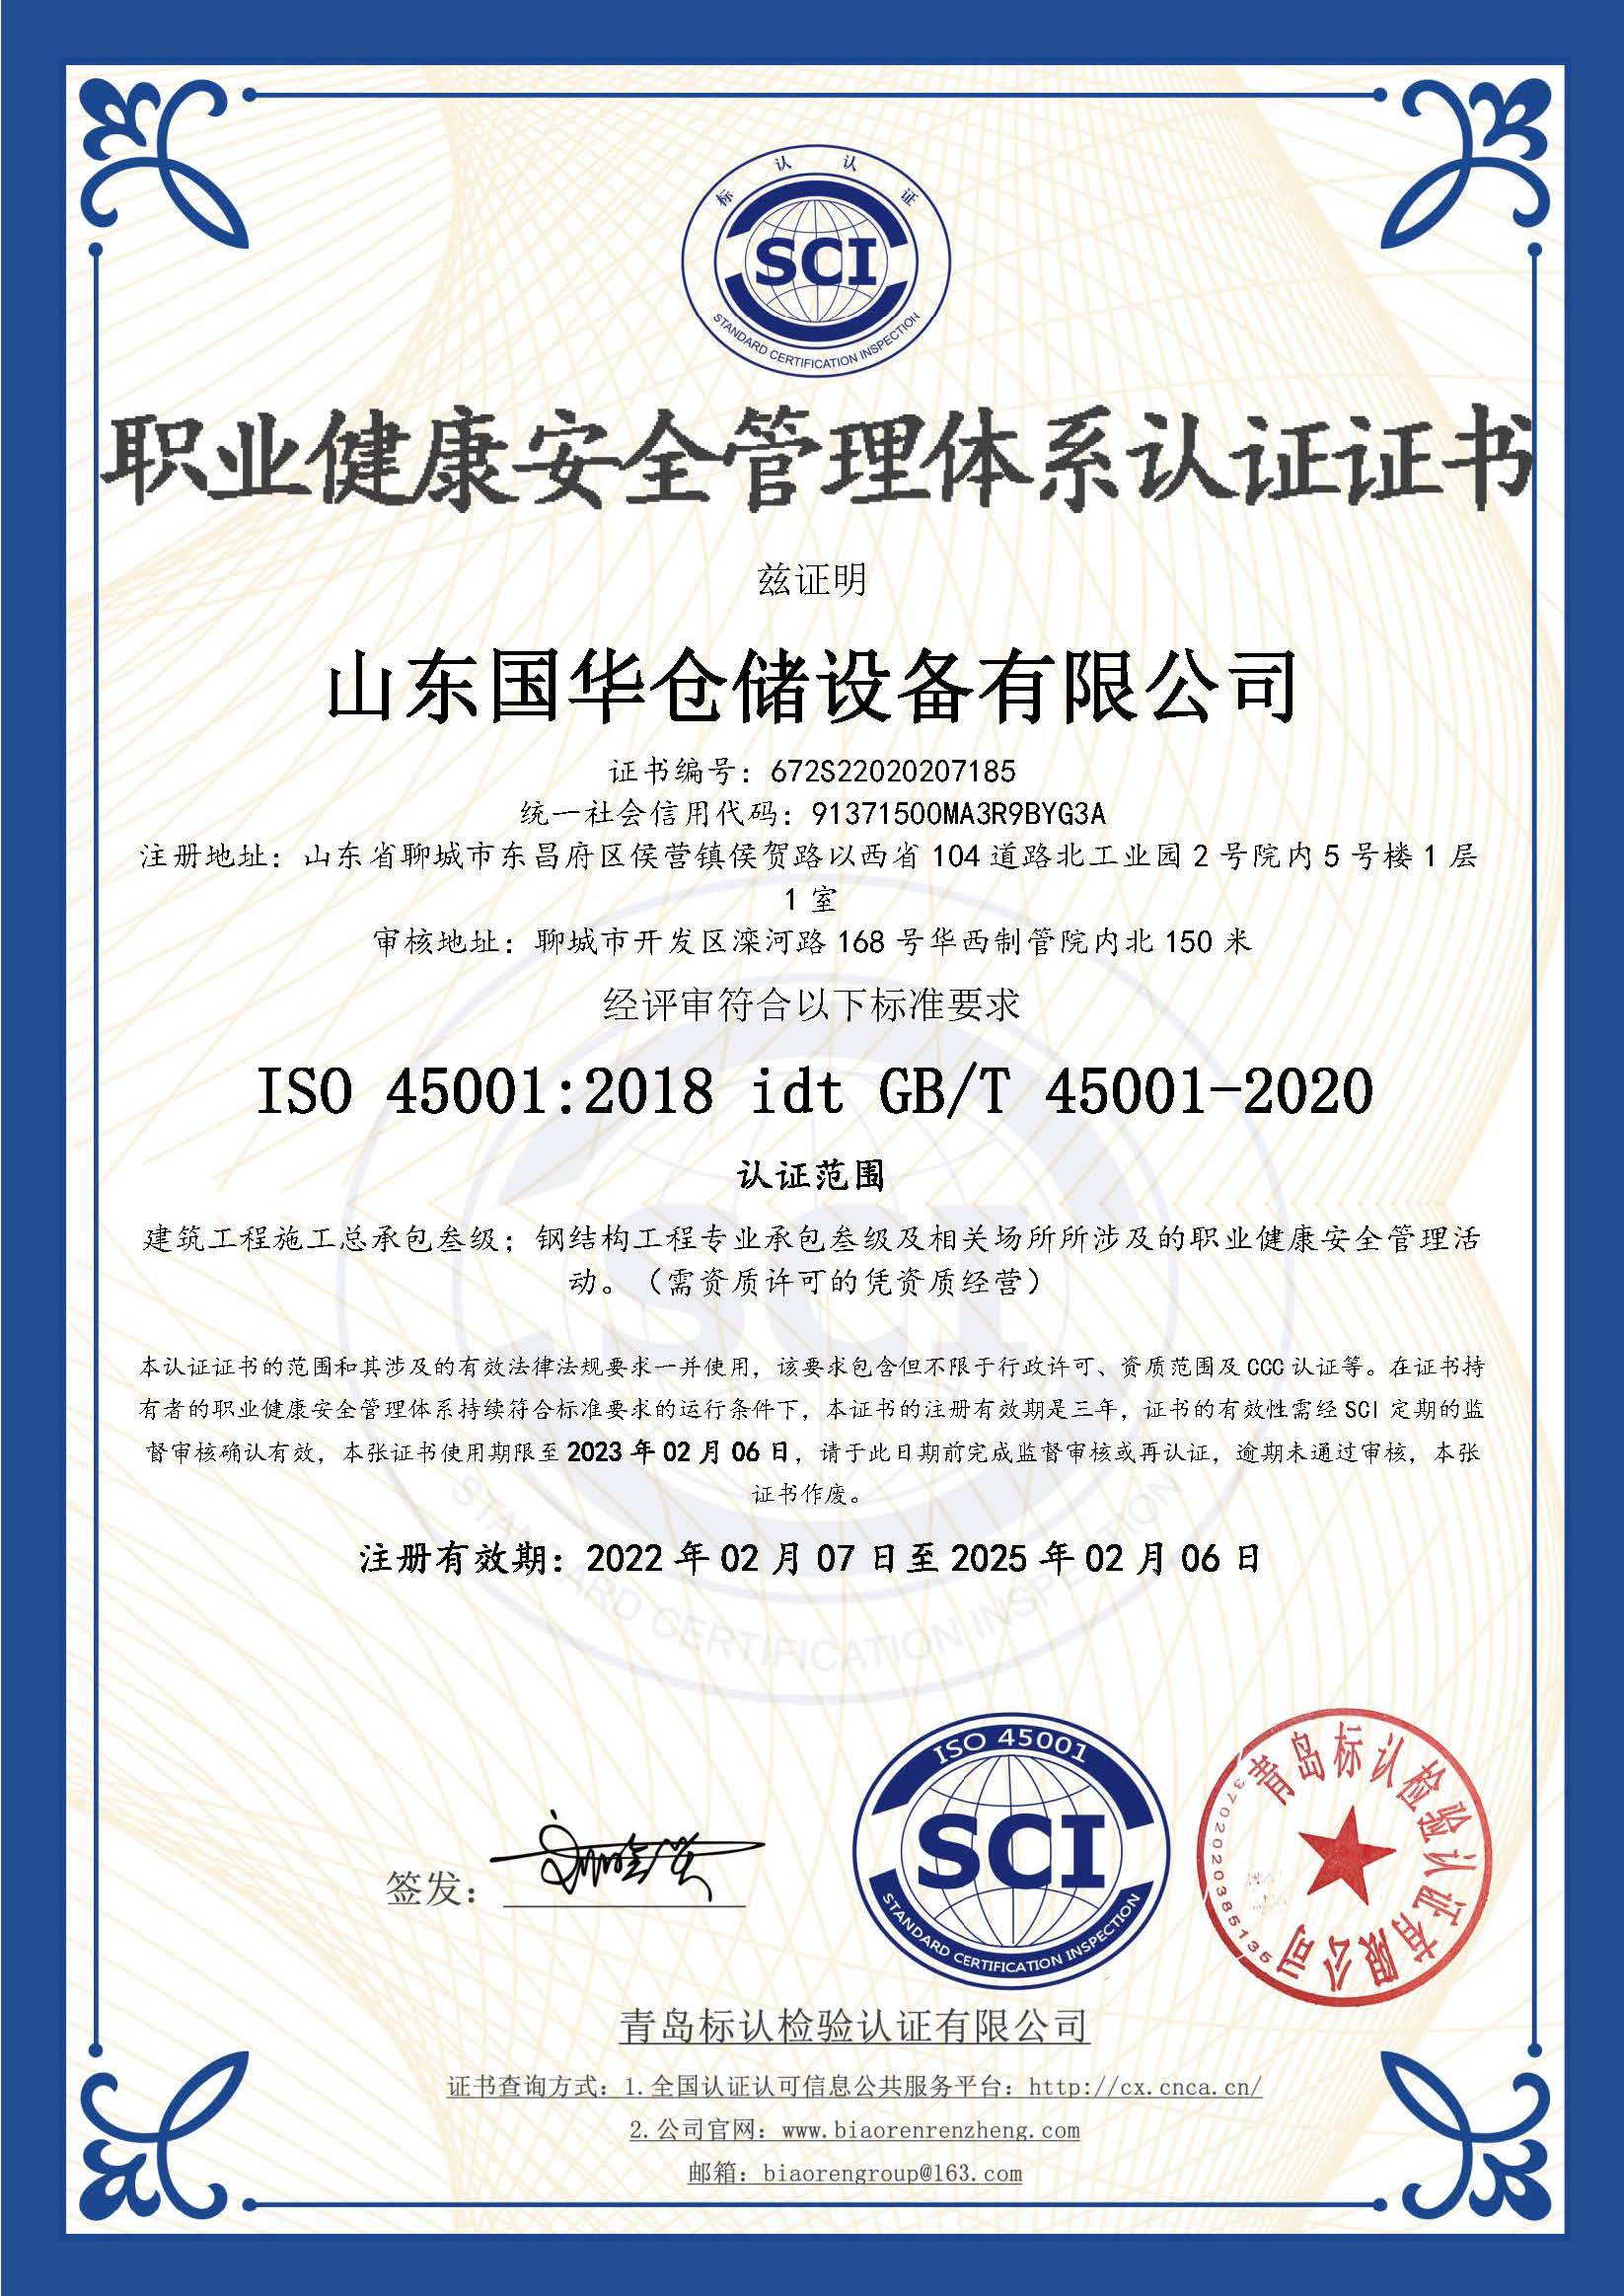 温州钢板仓职业健康安全管理体系认证证书